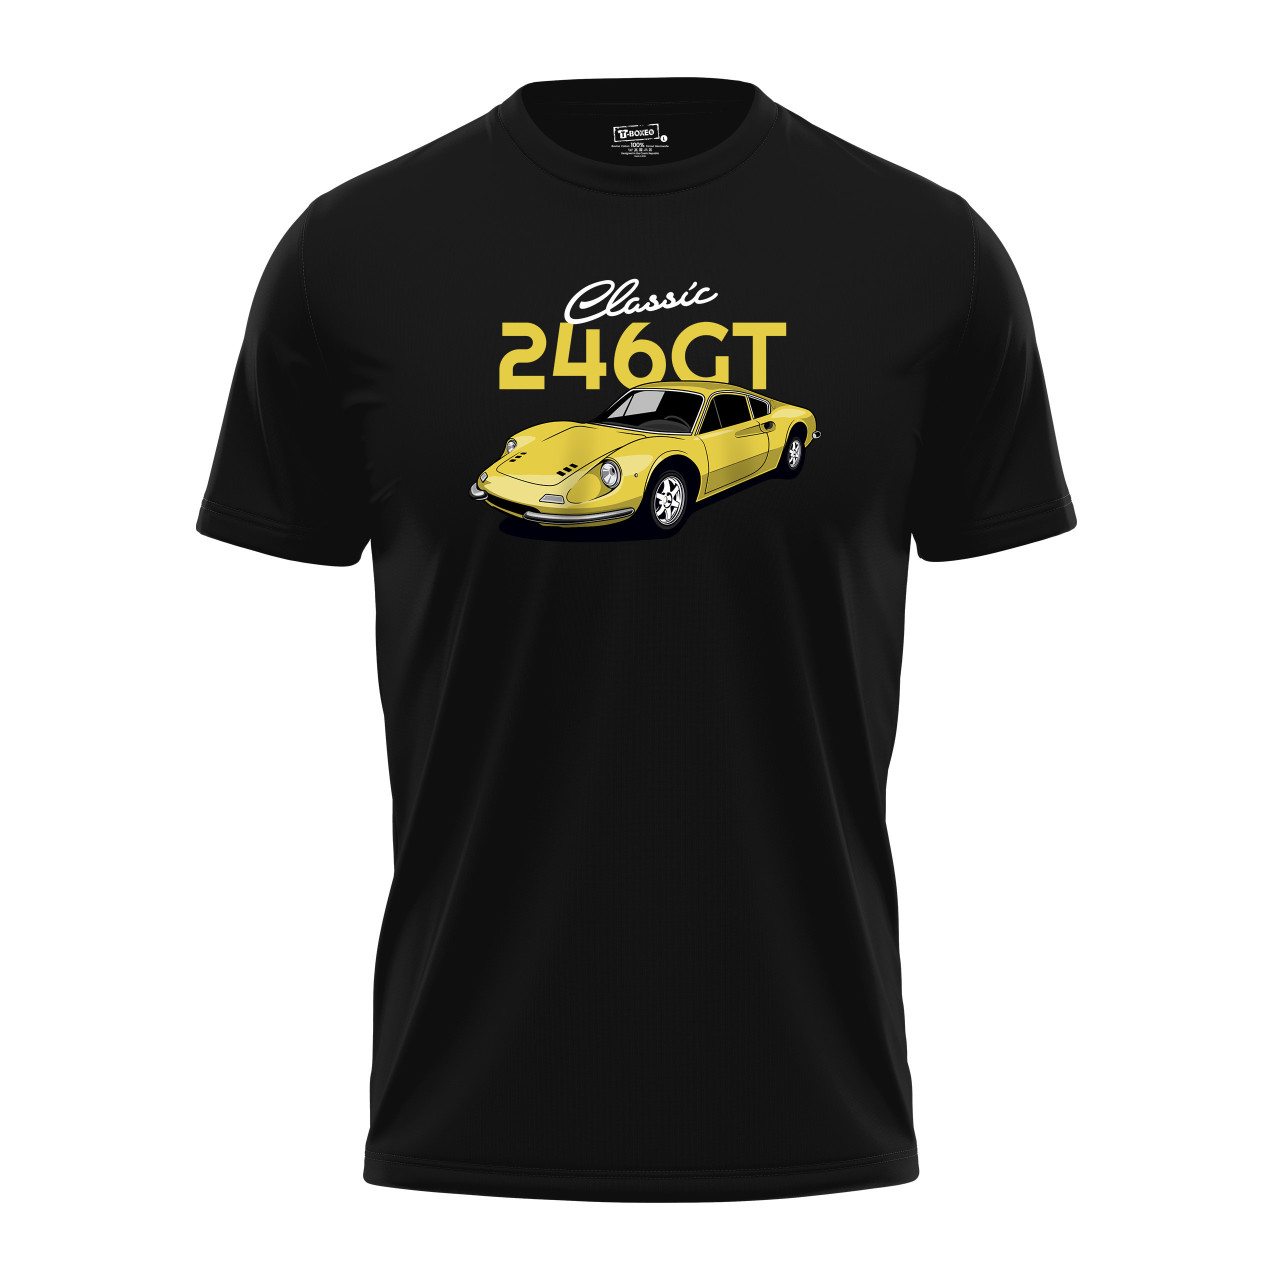 Pánské tričko s potiskem “246GT Classic”